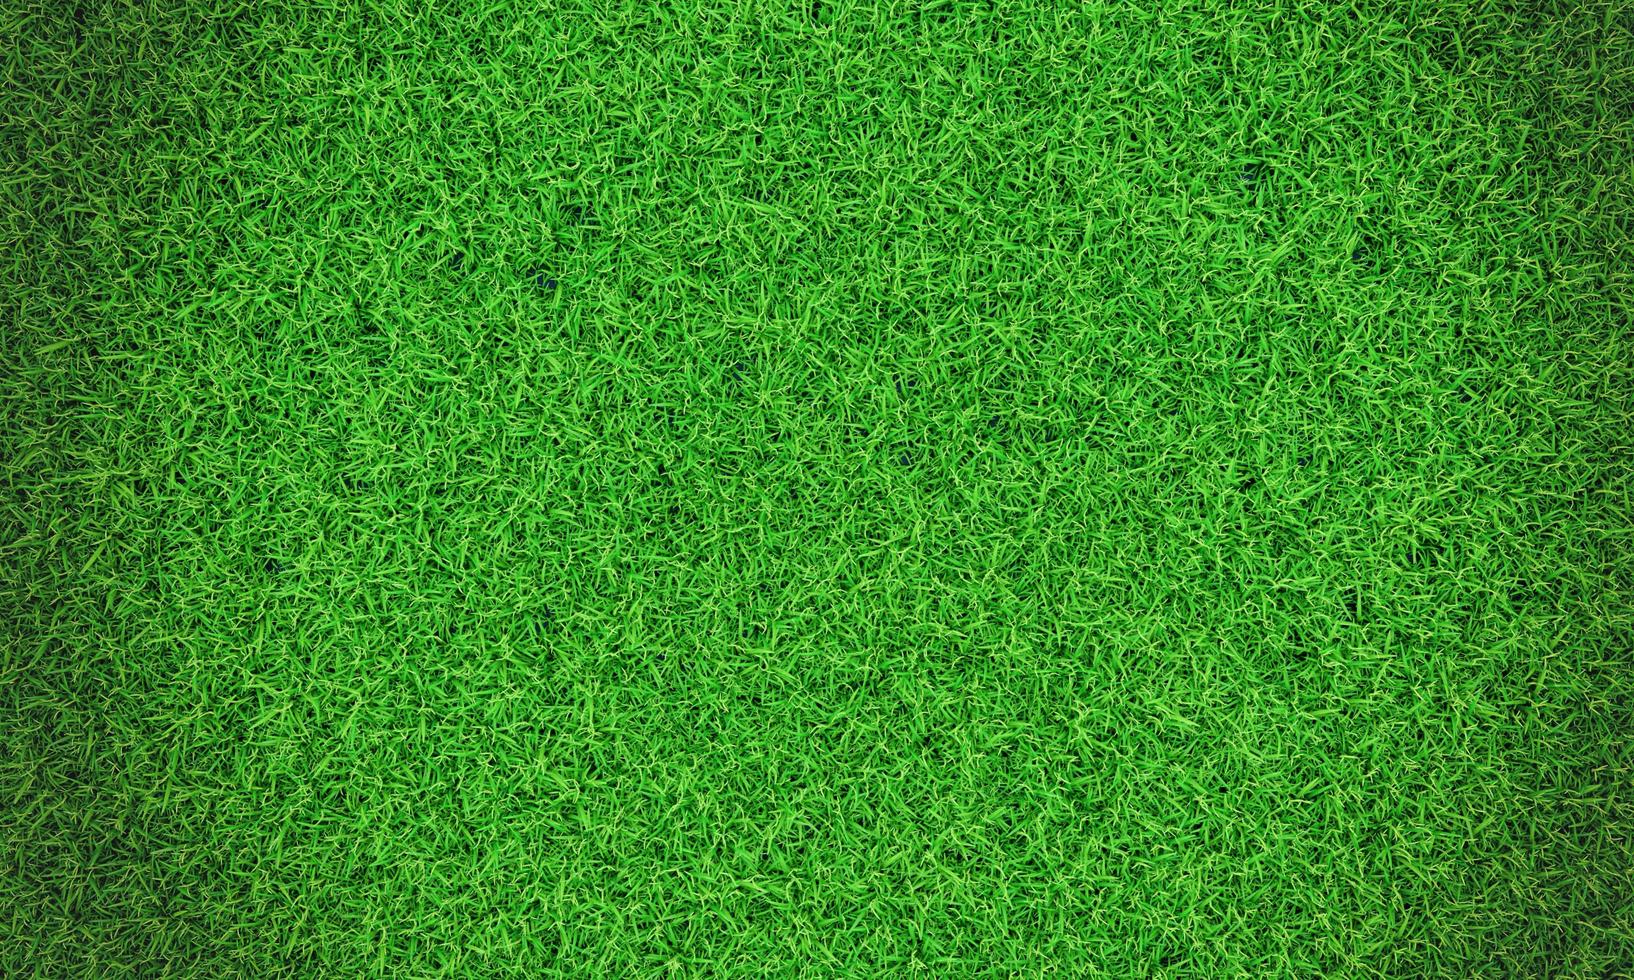 Hintergrundvignette des grünen Grases oder die natürliche Wandbeschaffenheit. Draufsicht frischer grüner Rasen für Hintergrund, Hintergrund oder Tapete. Ebenen und Gräser in verschiedenen Größen sind sauber und ordentlich. der Rasen foto